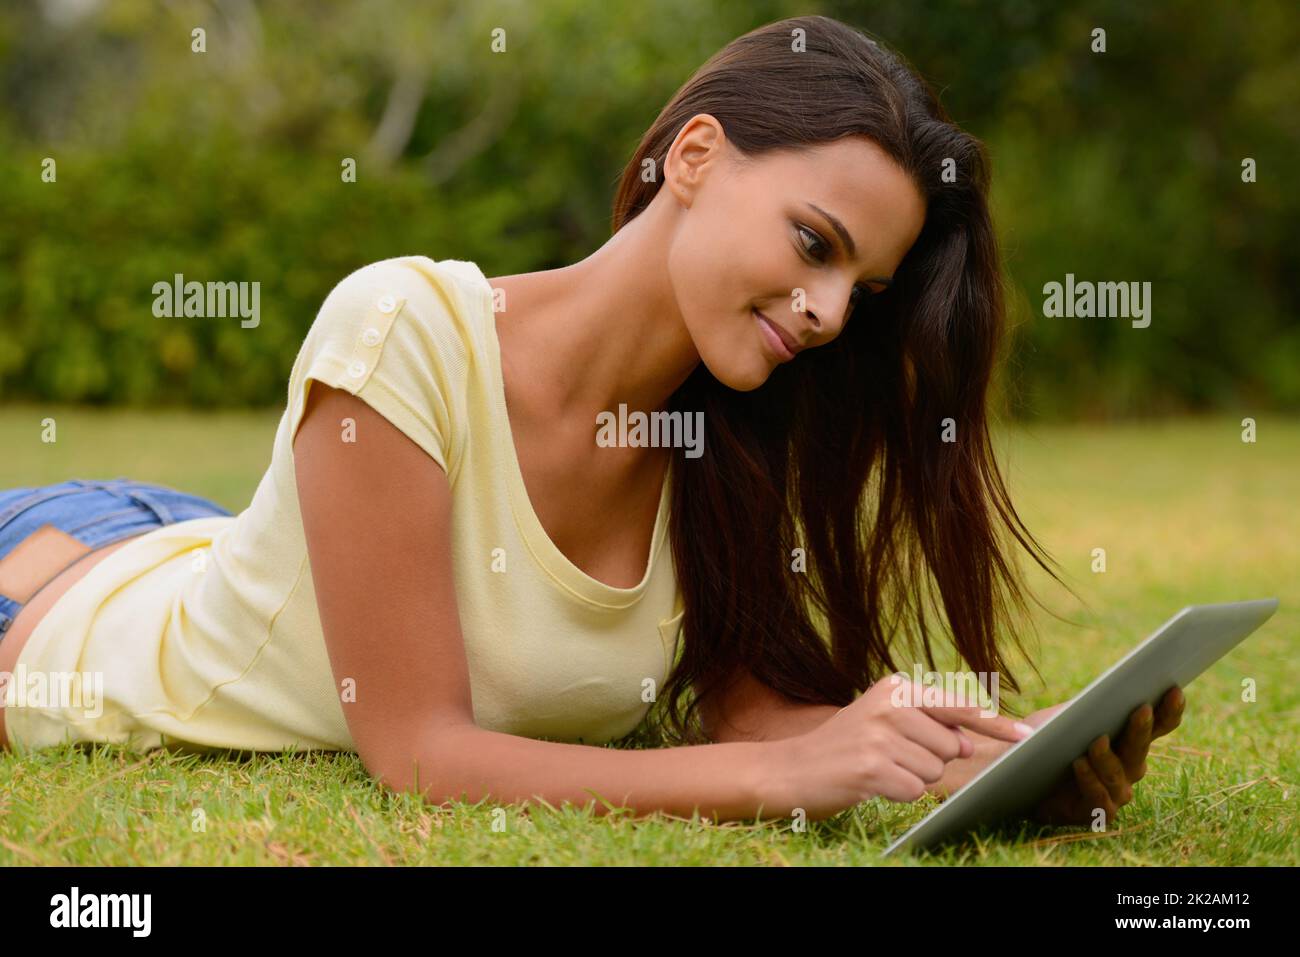 Connexion confortable. Une jeune femme travaillant sur un pavé tactile en étant couché sur l'herbe. Banque D'Images